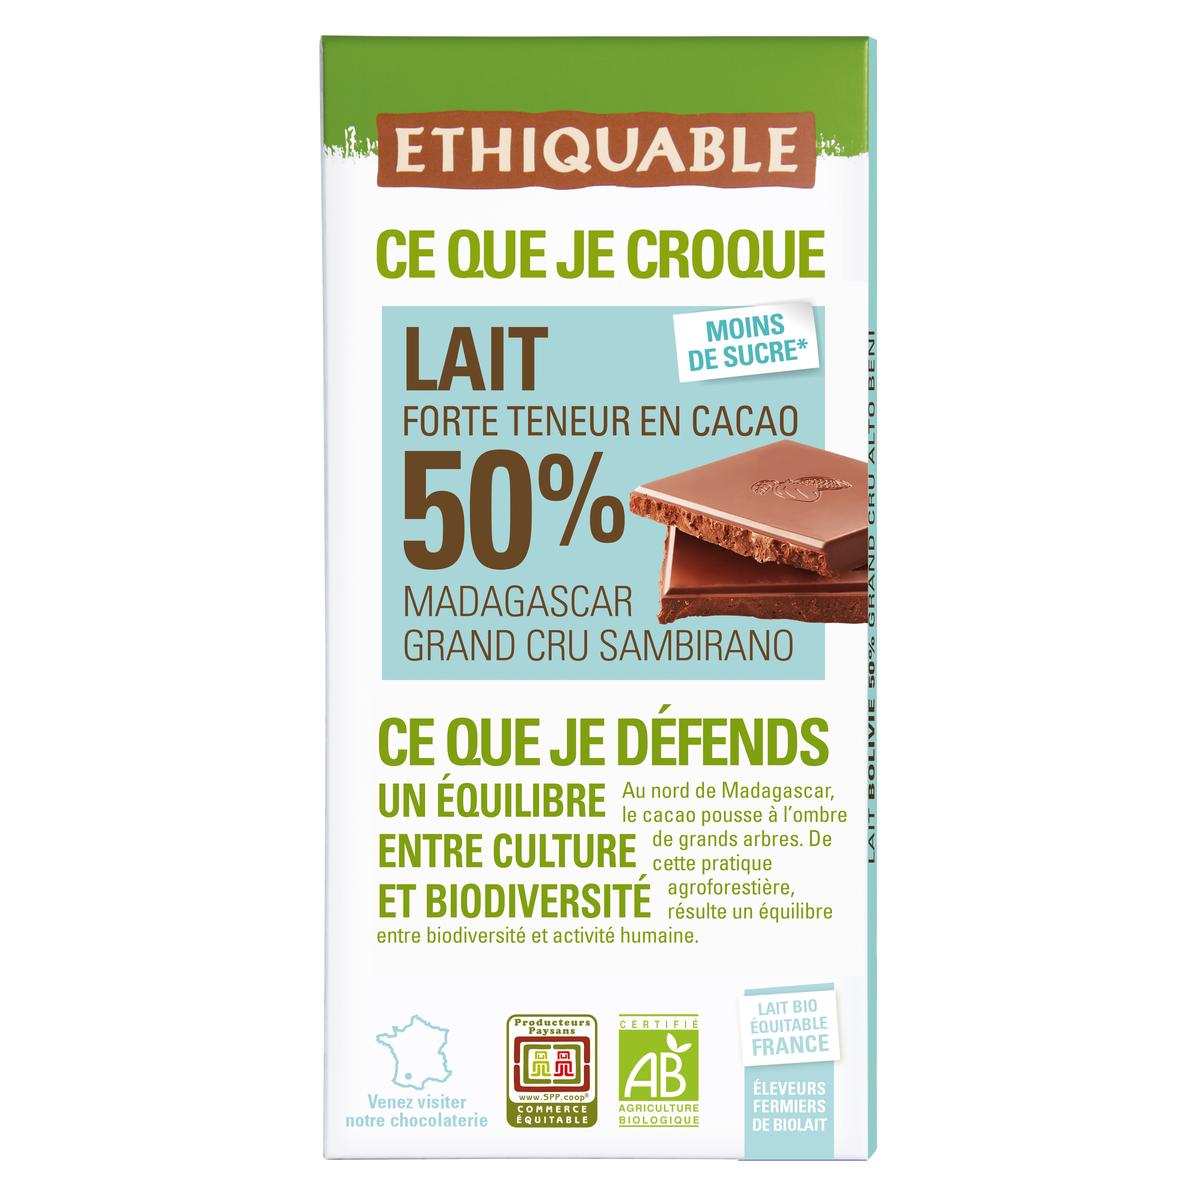 Tablette 100% Cacao sans sucre Origine Pérou 100 g Saveurs & Nature